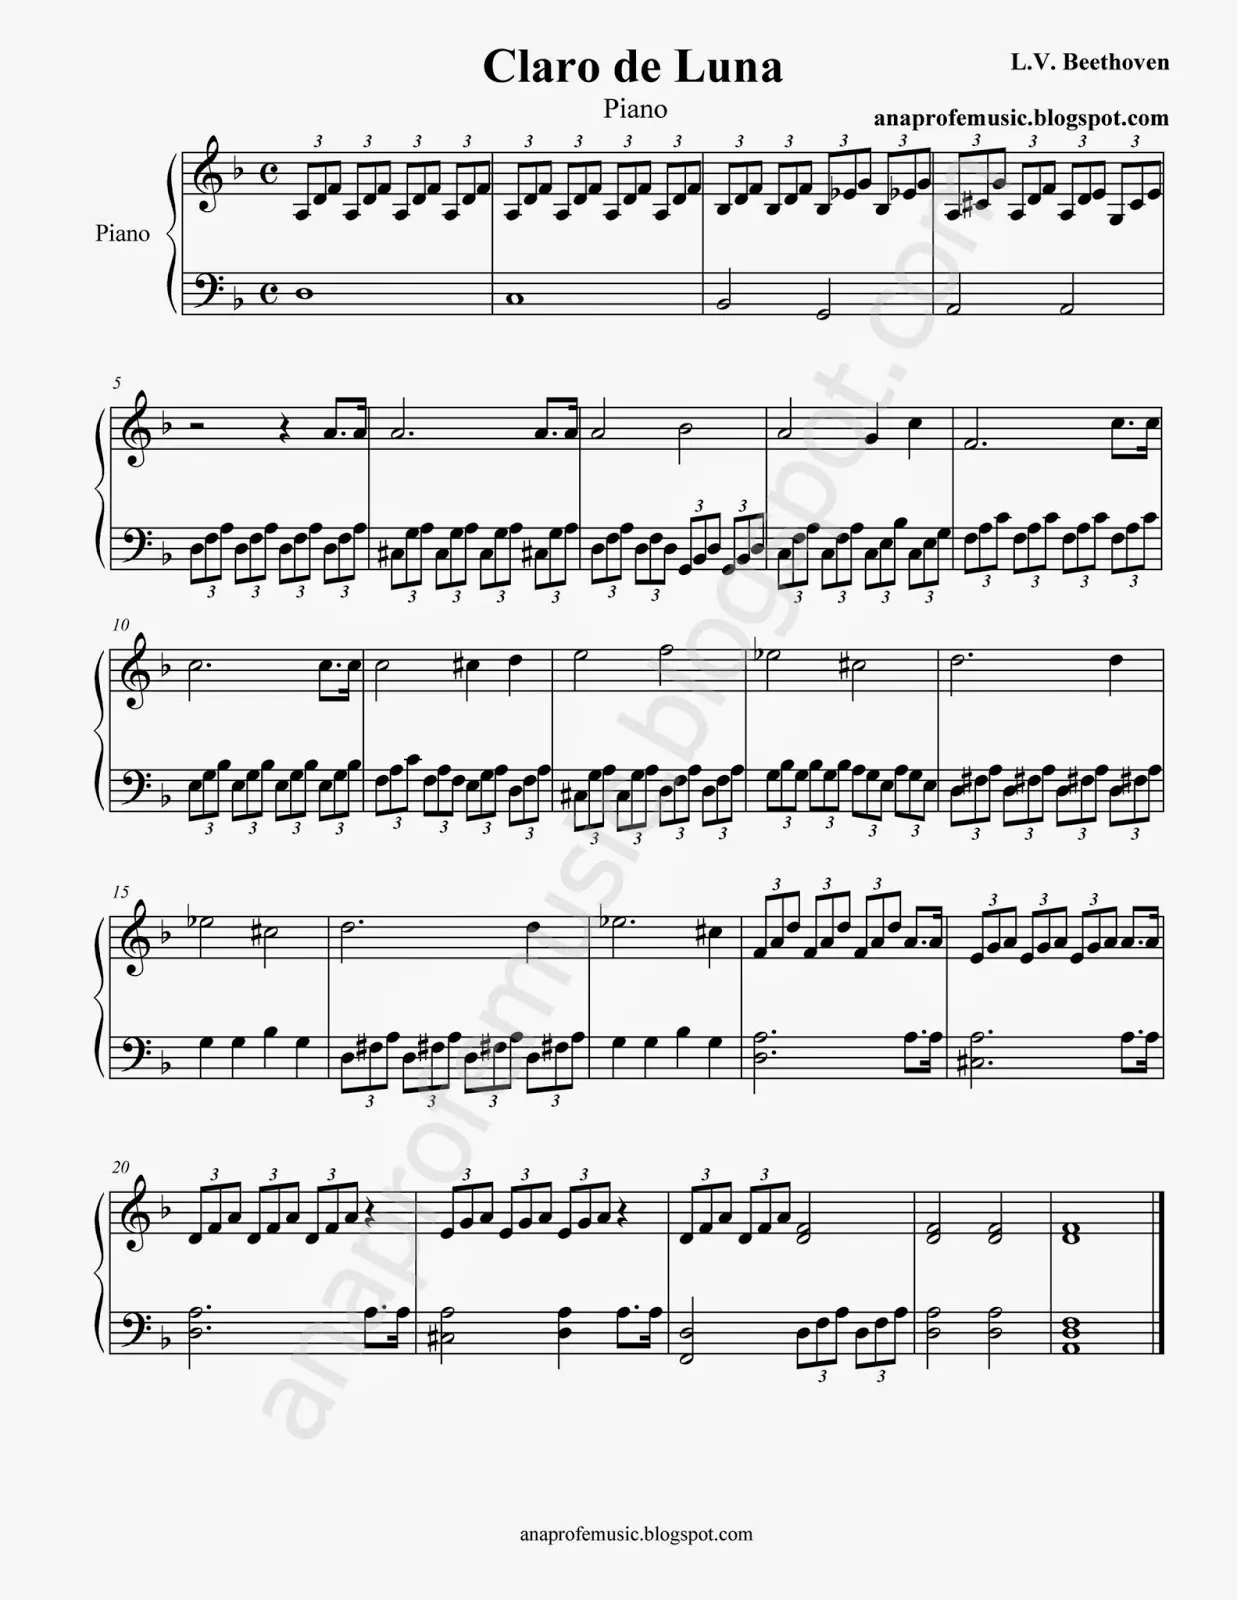 claro de luna de beethoven en piano y violin partitura - Cuántos movimientos tiene la Sonata Claro de luna de Beethoven